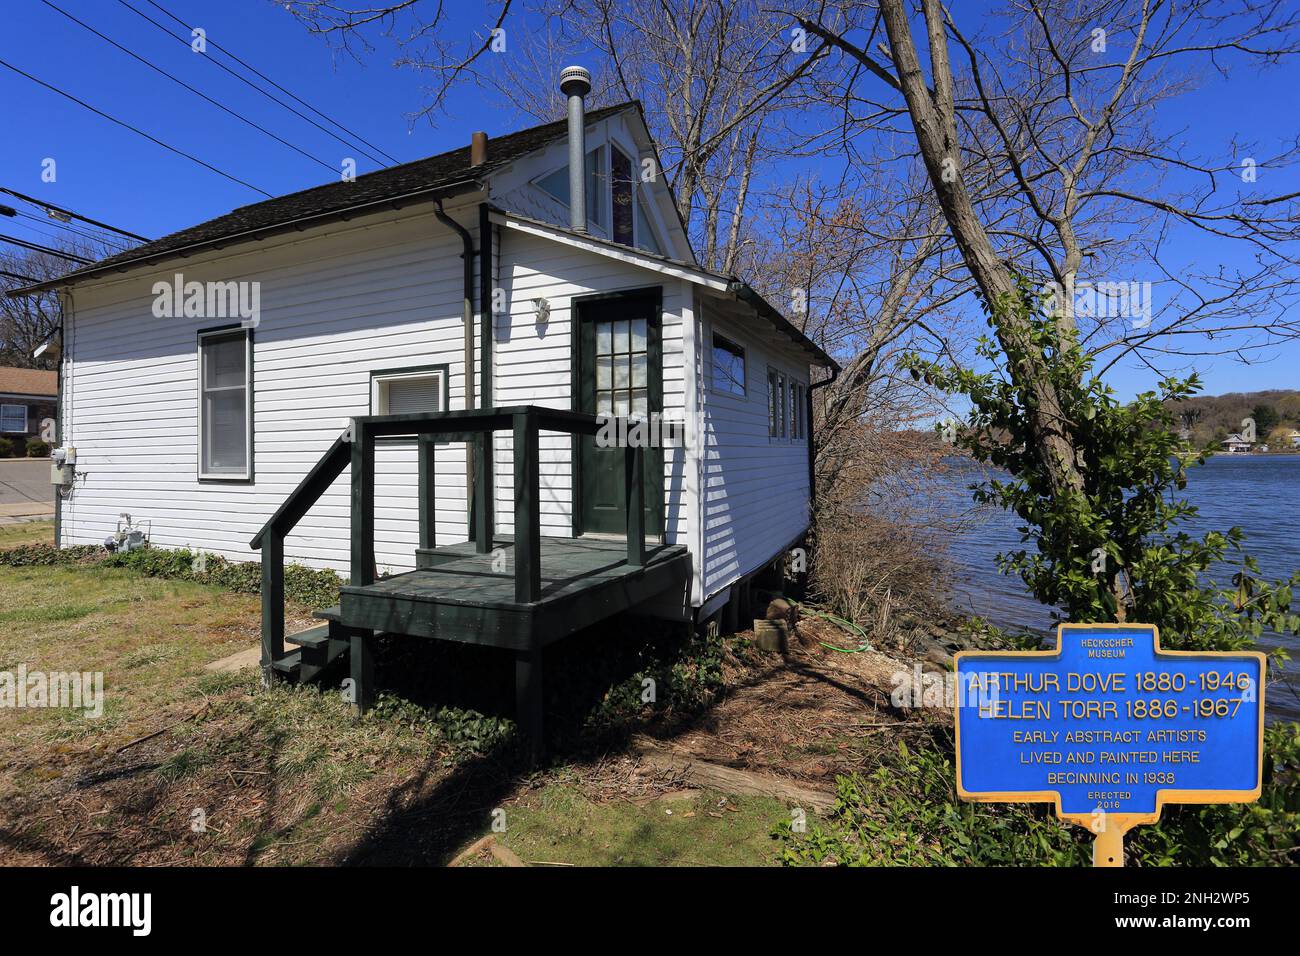 Arthur Dove / Helen Torr maison historique à Centerport long Island New York Banque D'Images